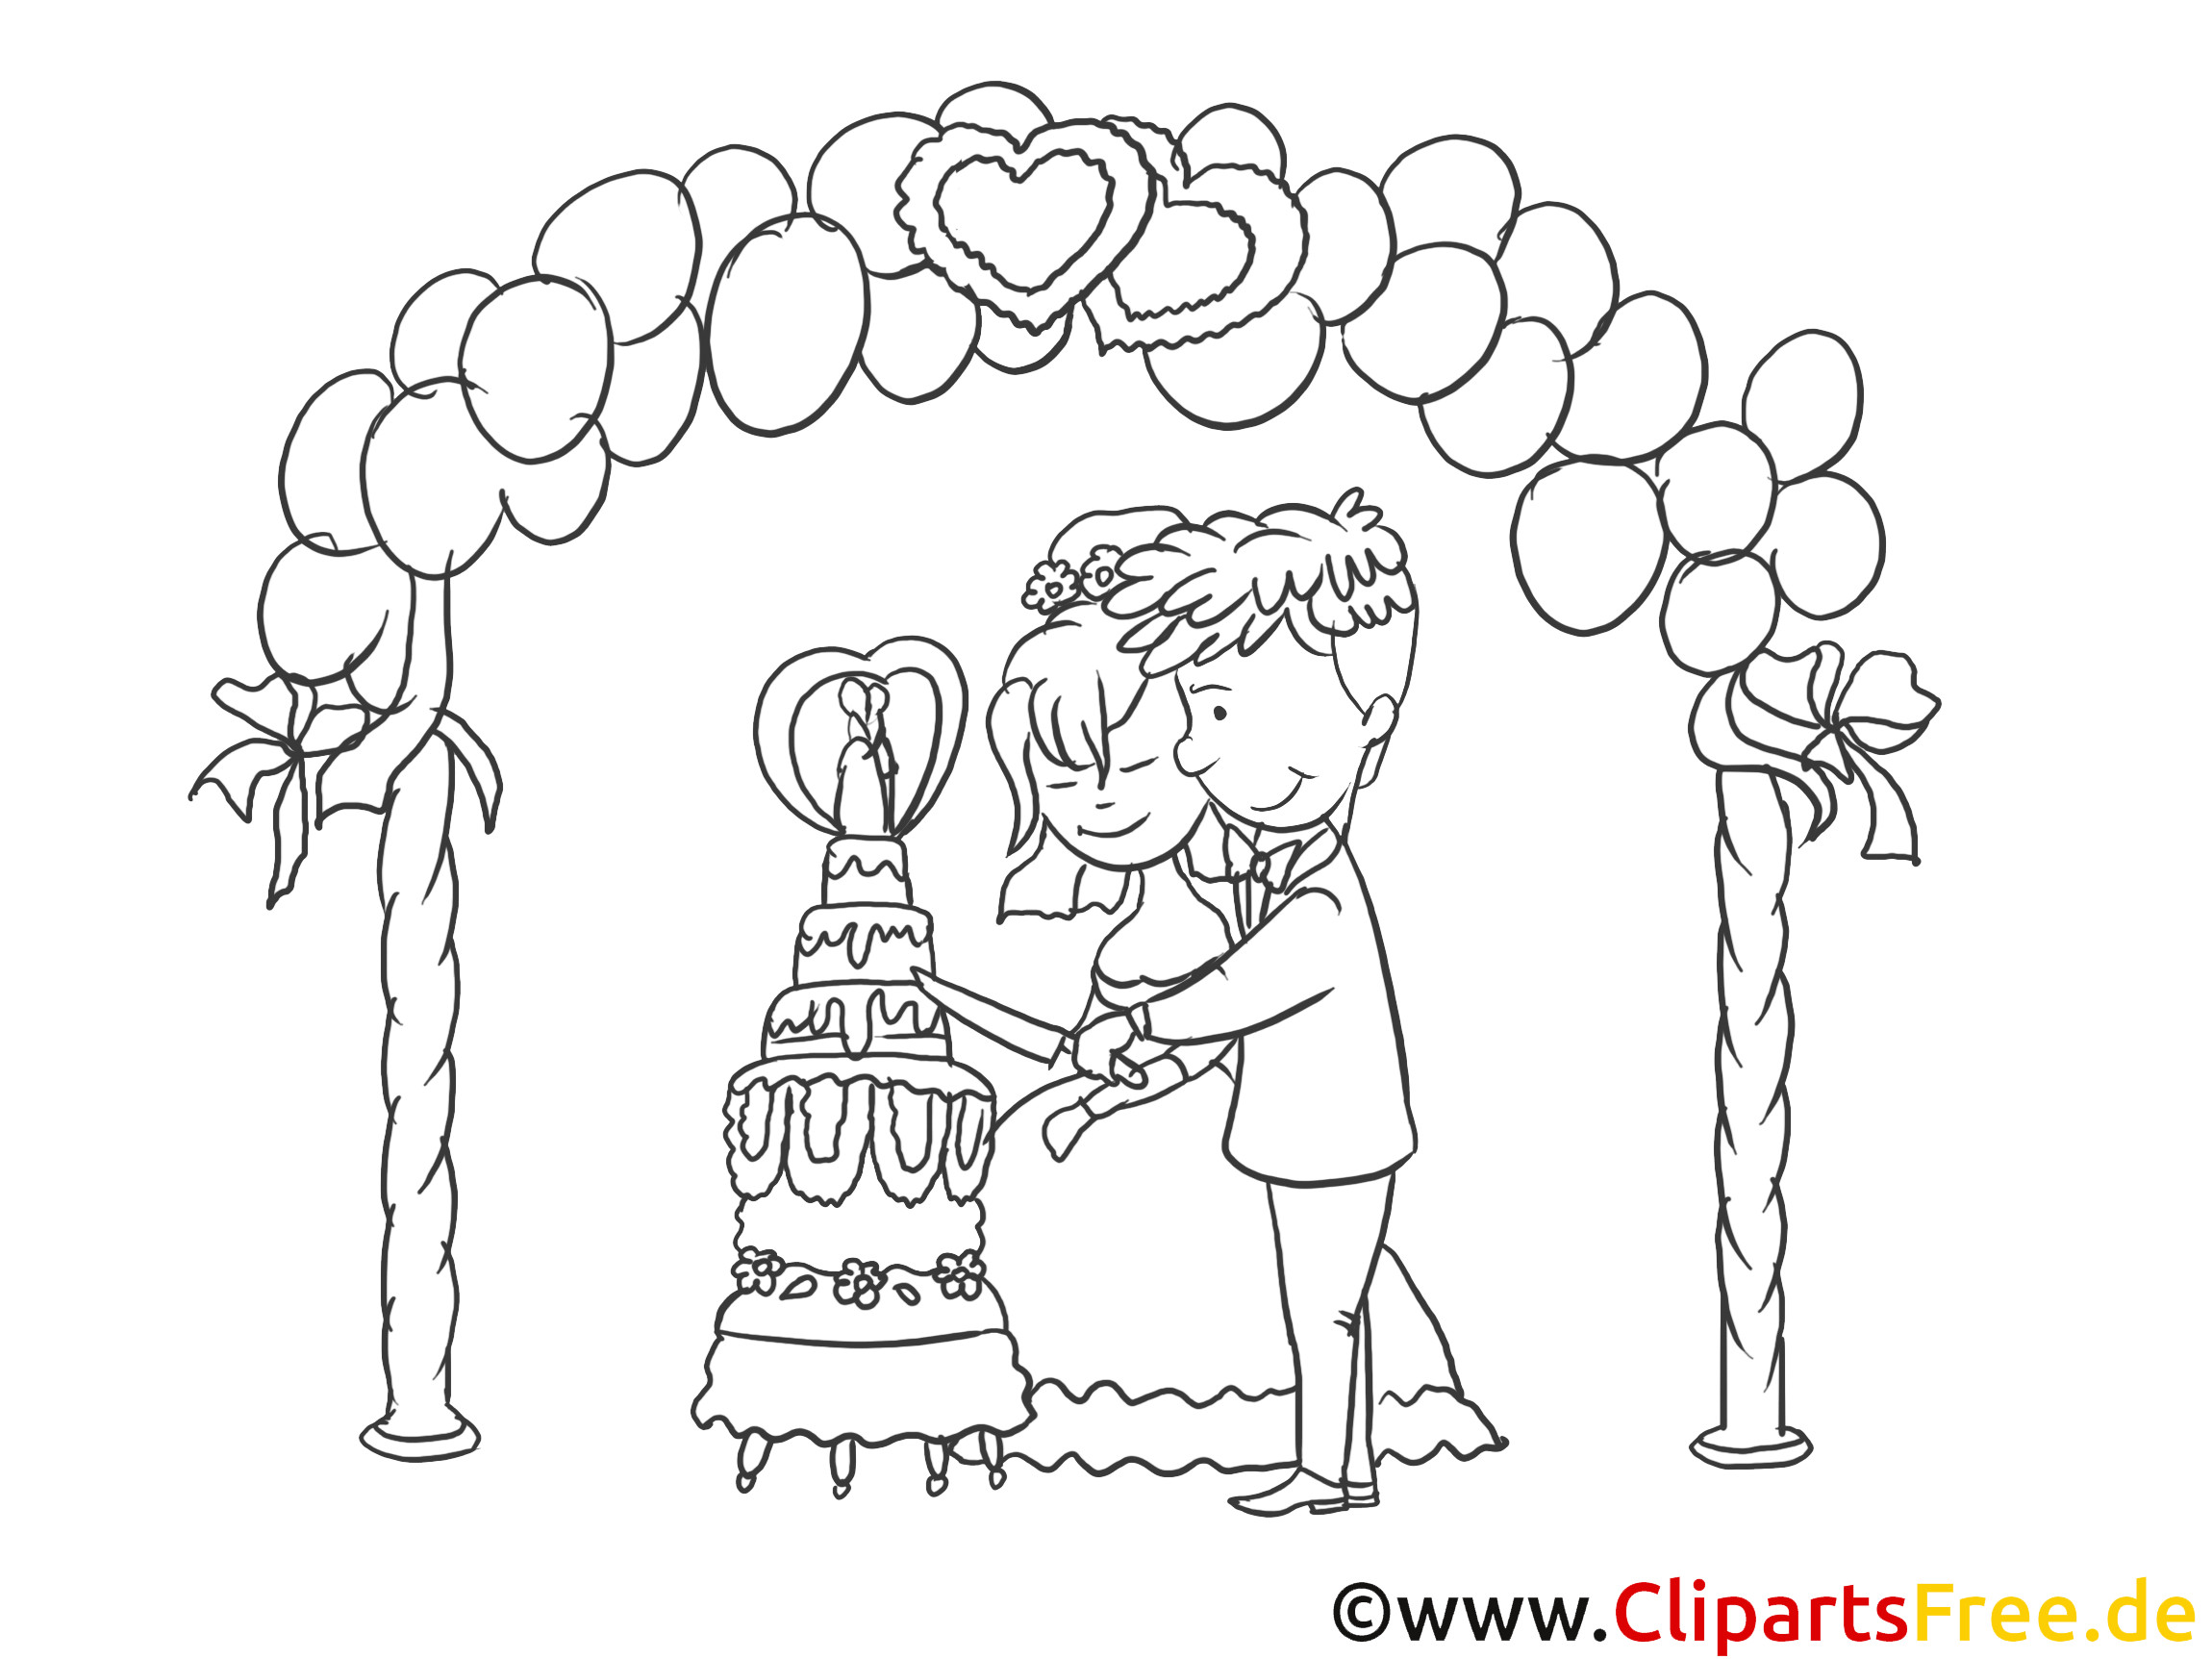 Hochzeit Clipart Schwarz Weiß
 Kirchliche Trauung Clipart Zeichnung Bild schwarz weiss